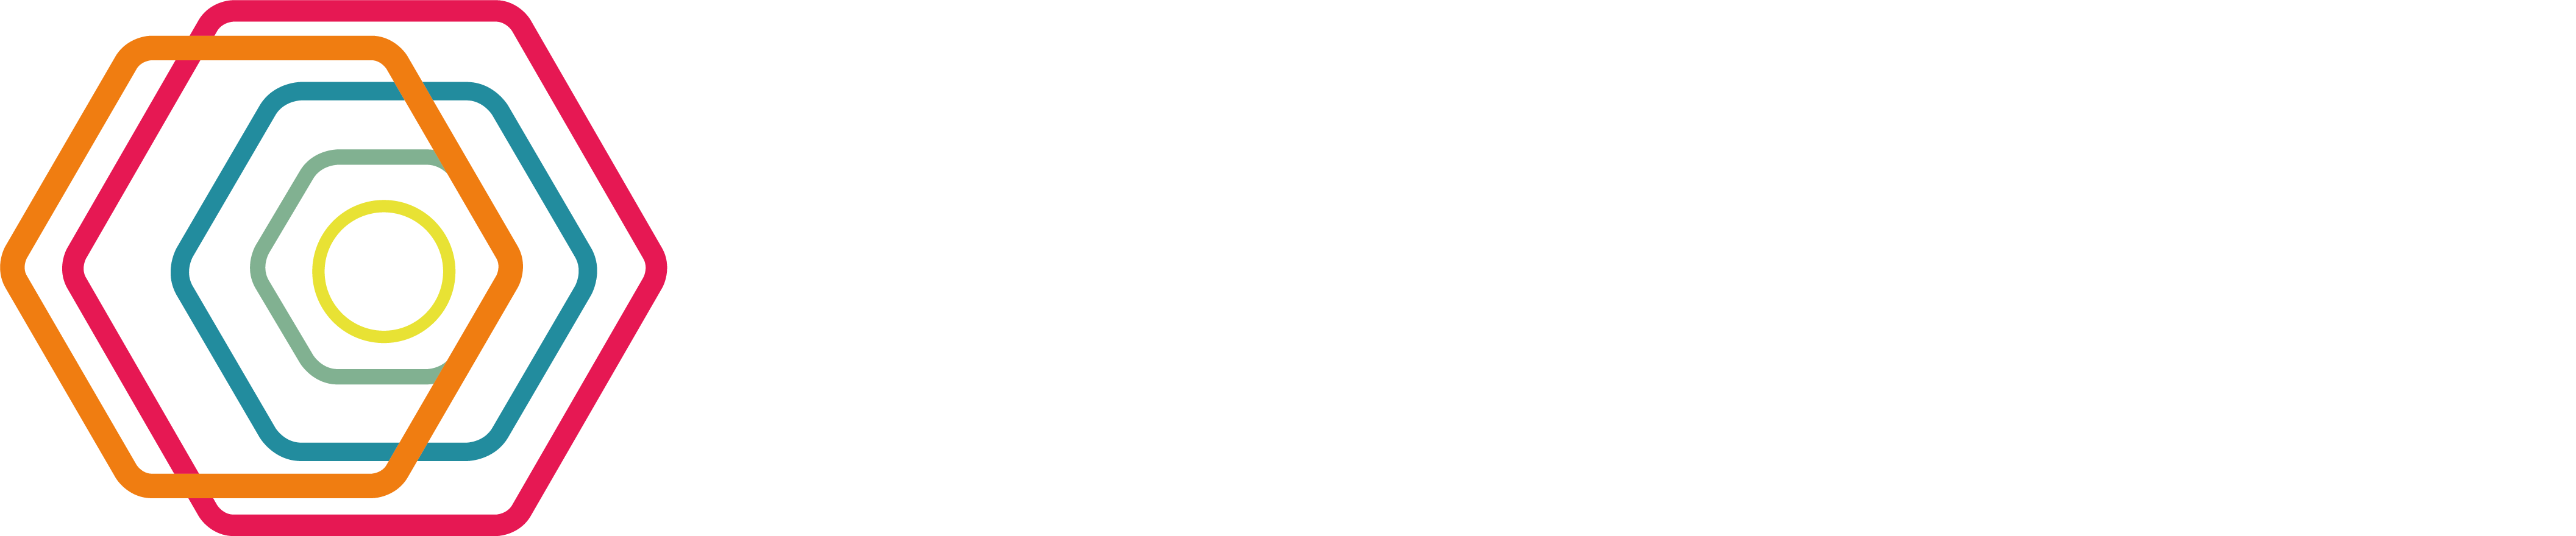 logo-yaveon-weiß